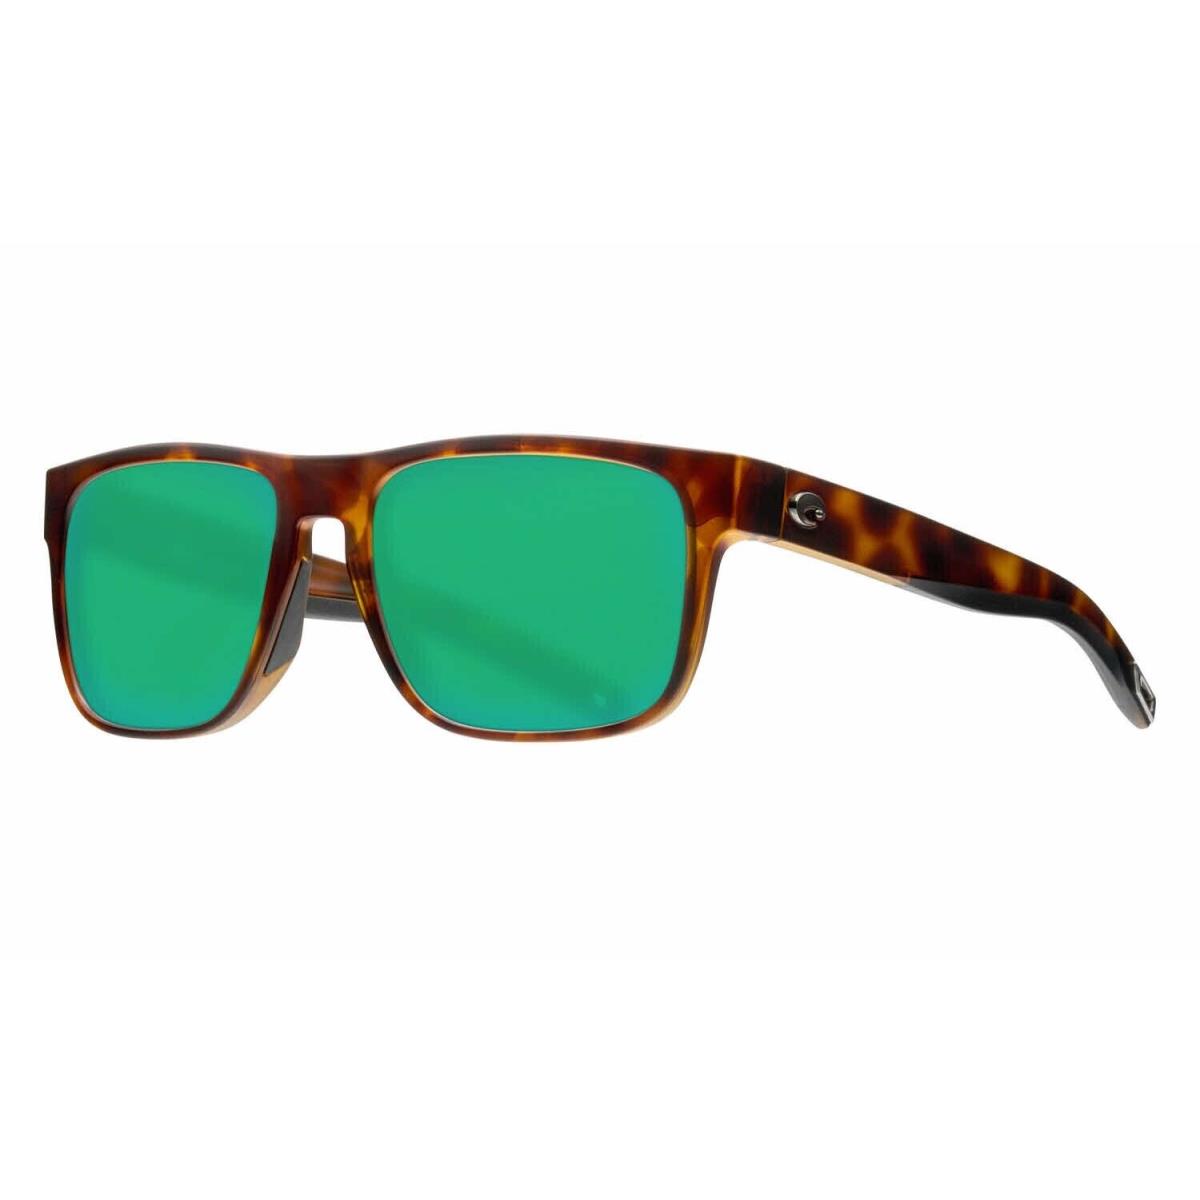 Costa Del Mar Spearo Sunglasses Matte Tortoise Frame w/ Green Mirror Glass Lens - Frame: Brown, Lens: Green